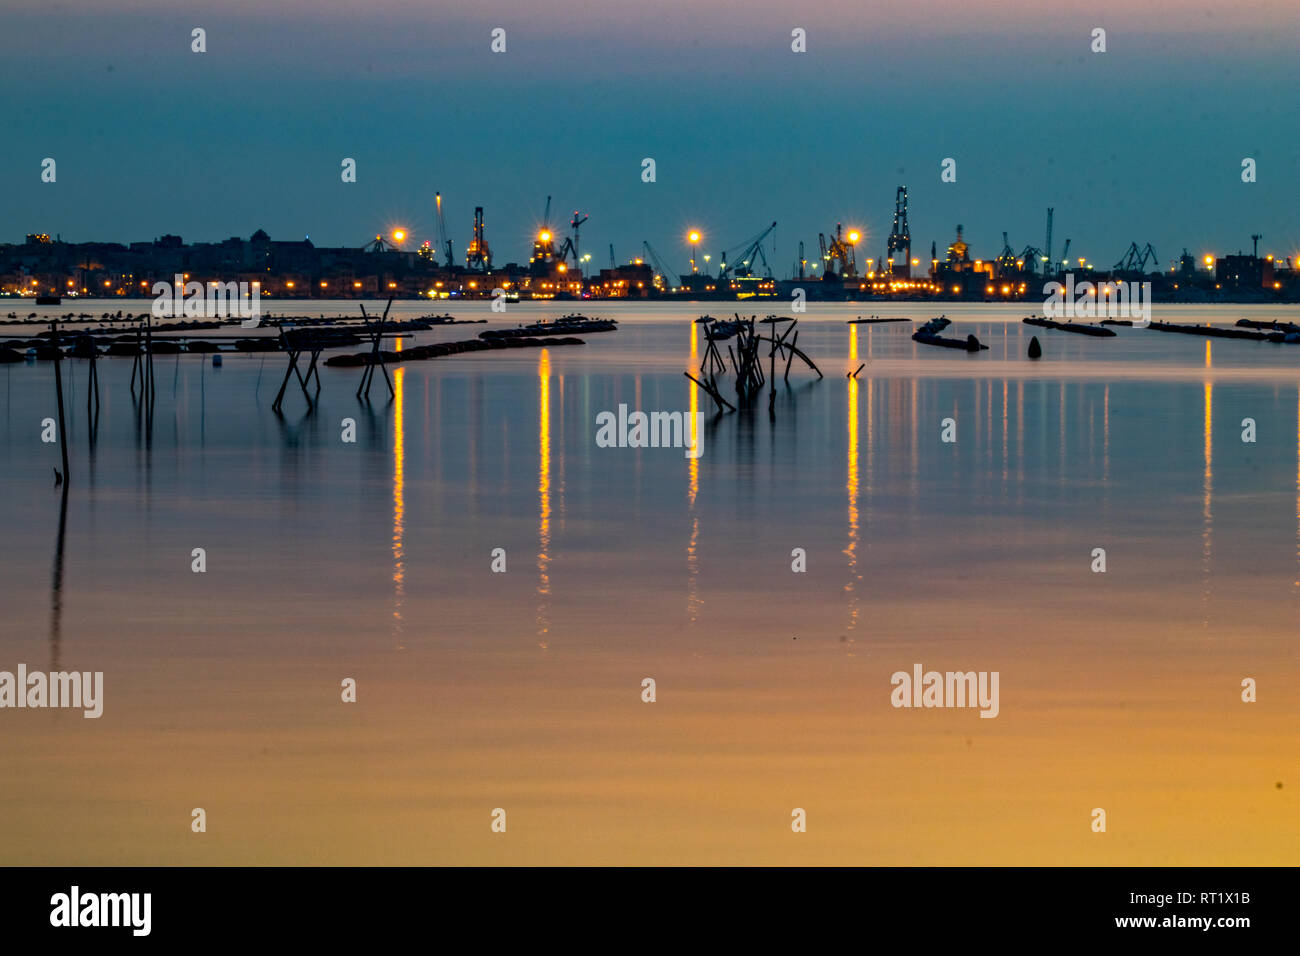 La fotografia notturna, una lunga esposizione immagine del cantiere e la zona industriale di Taranto, Italia con attrezzature di pesca nella parte anteriore e di acqua bella riflessi e colori del tramonto Foto Stock